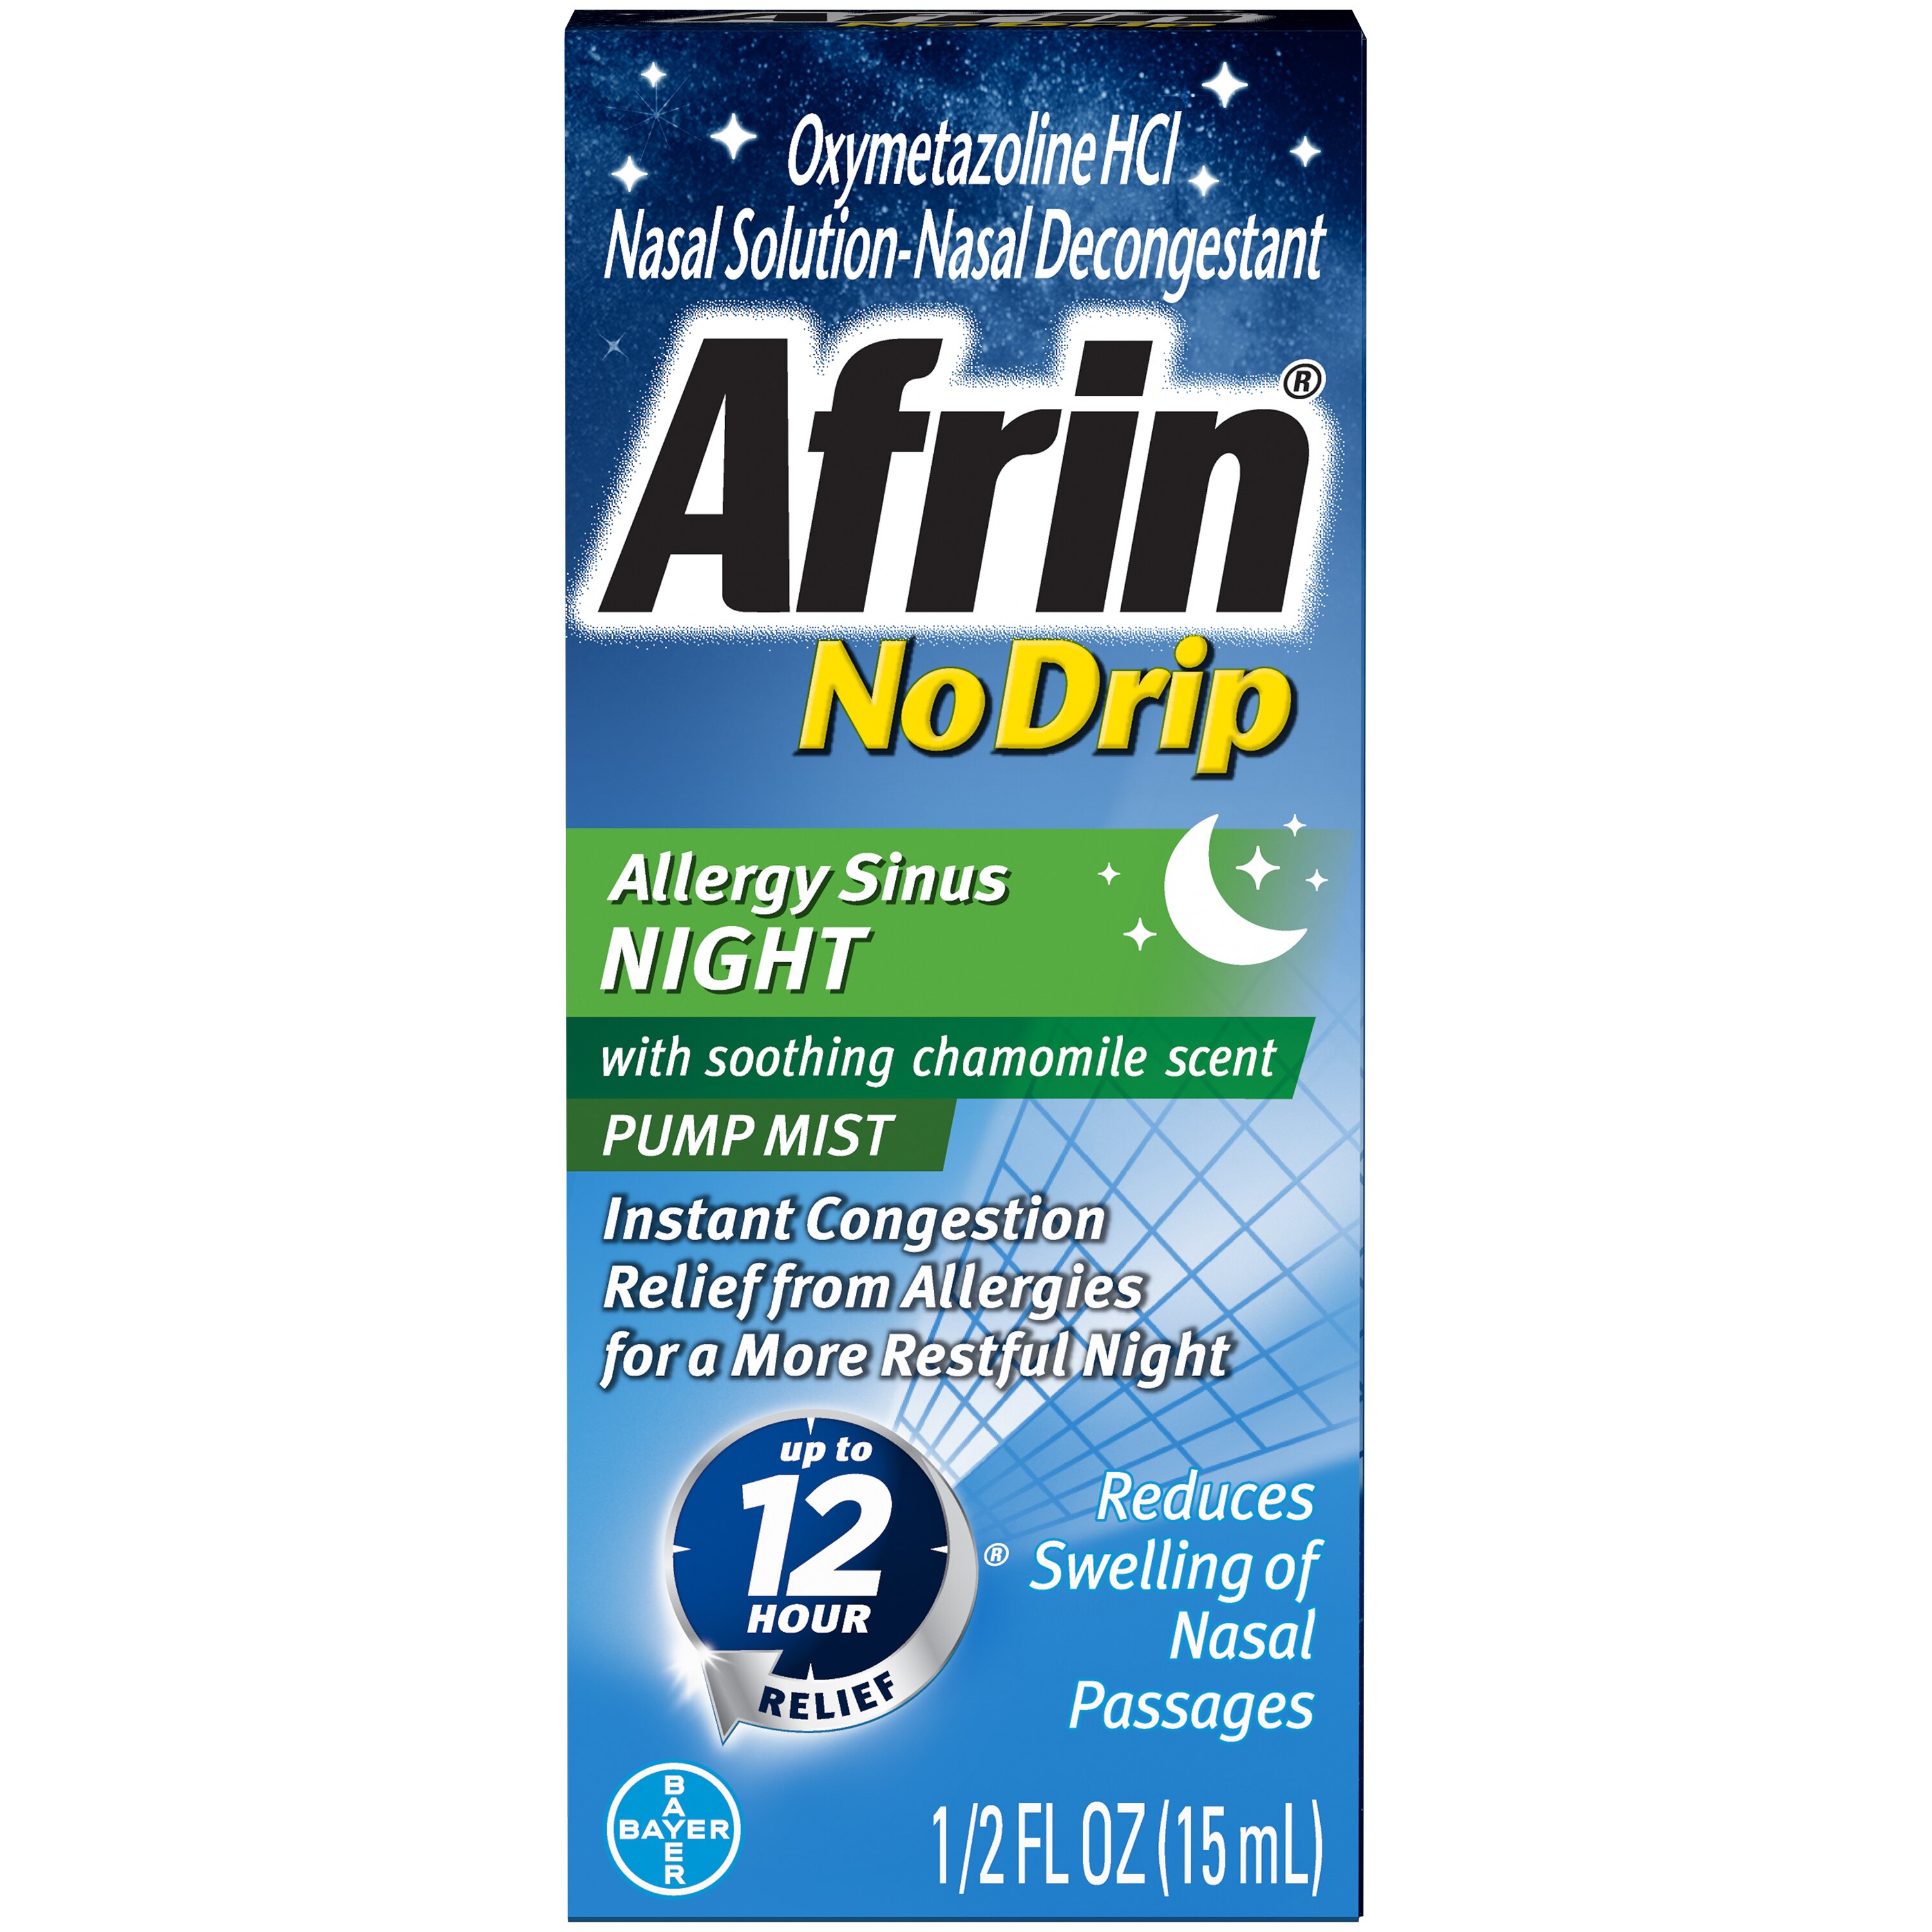 Afrin NoDrip 12HR Allergy + Sinus Nighttime Nasal Mist, Chamomille, 0.5 Oz , CVS